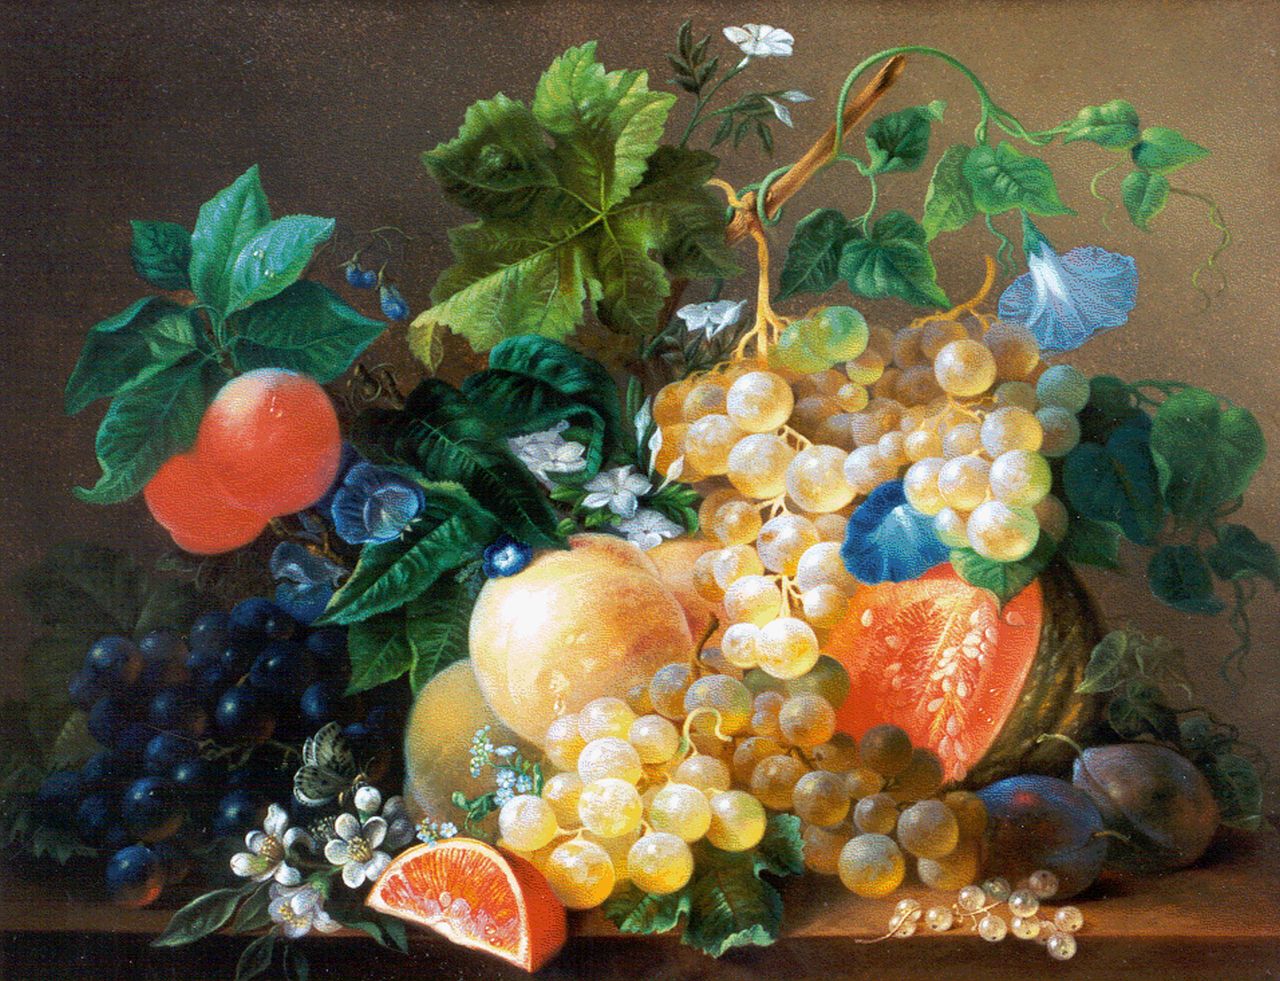 Singendonck D.J.  | Diederik Jan Singendonck, Stilleven met fruit en bloemen op een marmeren plint, olieverf op paneel 35,5 x 46,3 cm, gesigneerd linksonder